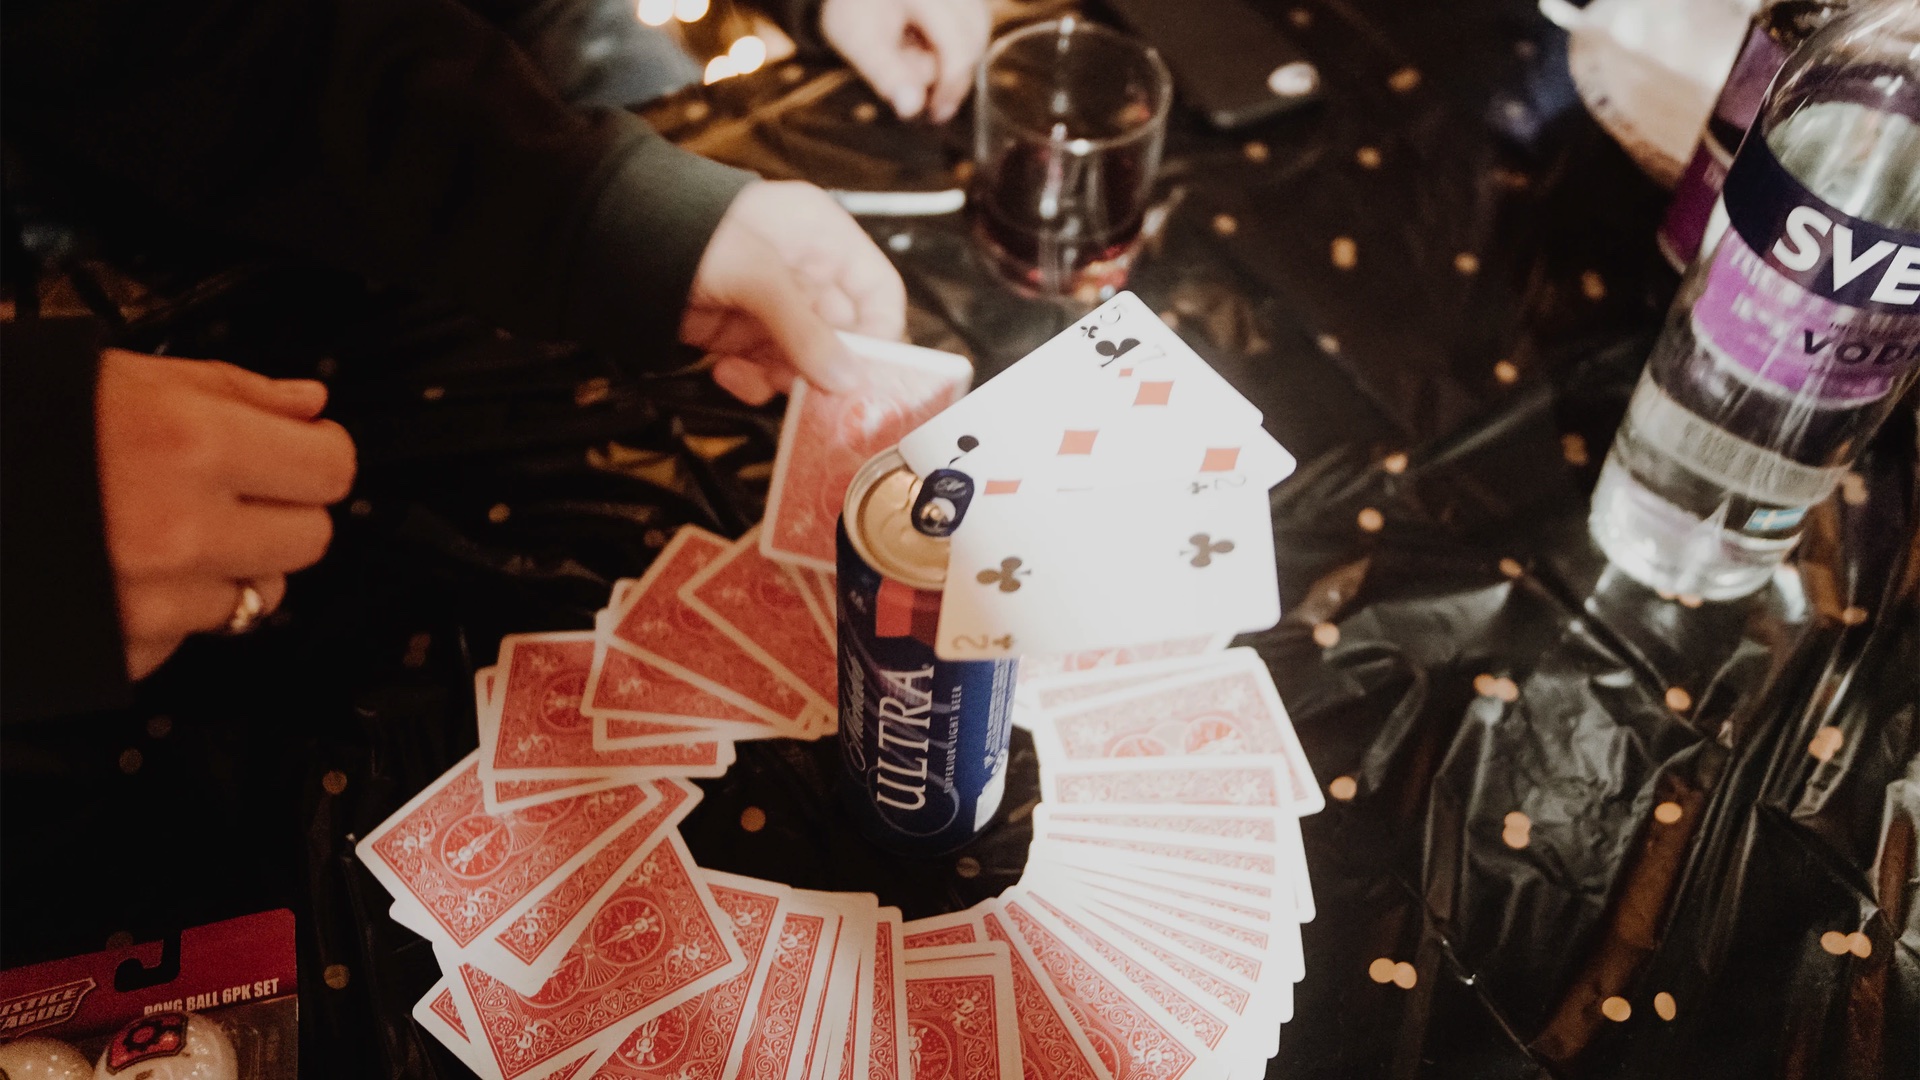 Bier Party le jeu de carte pour passer un apéro festif